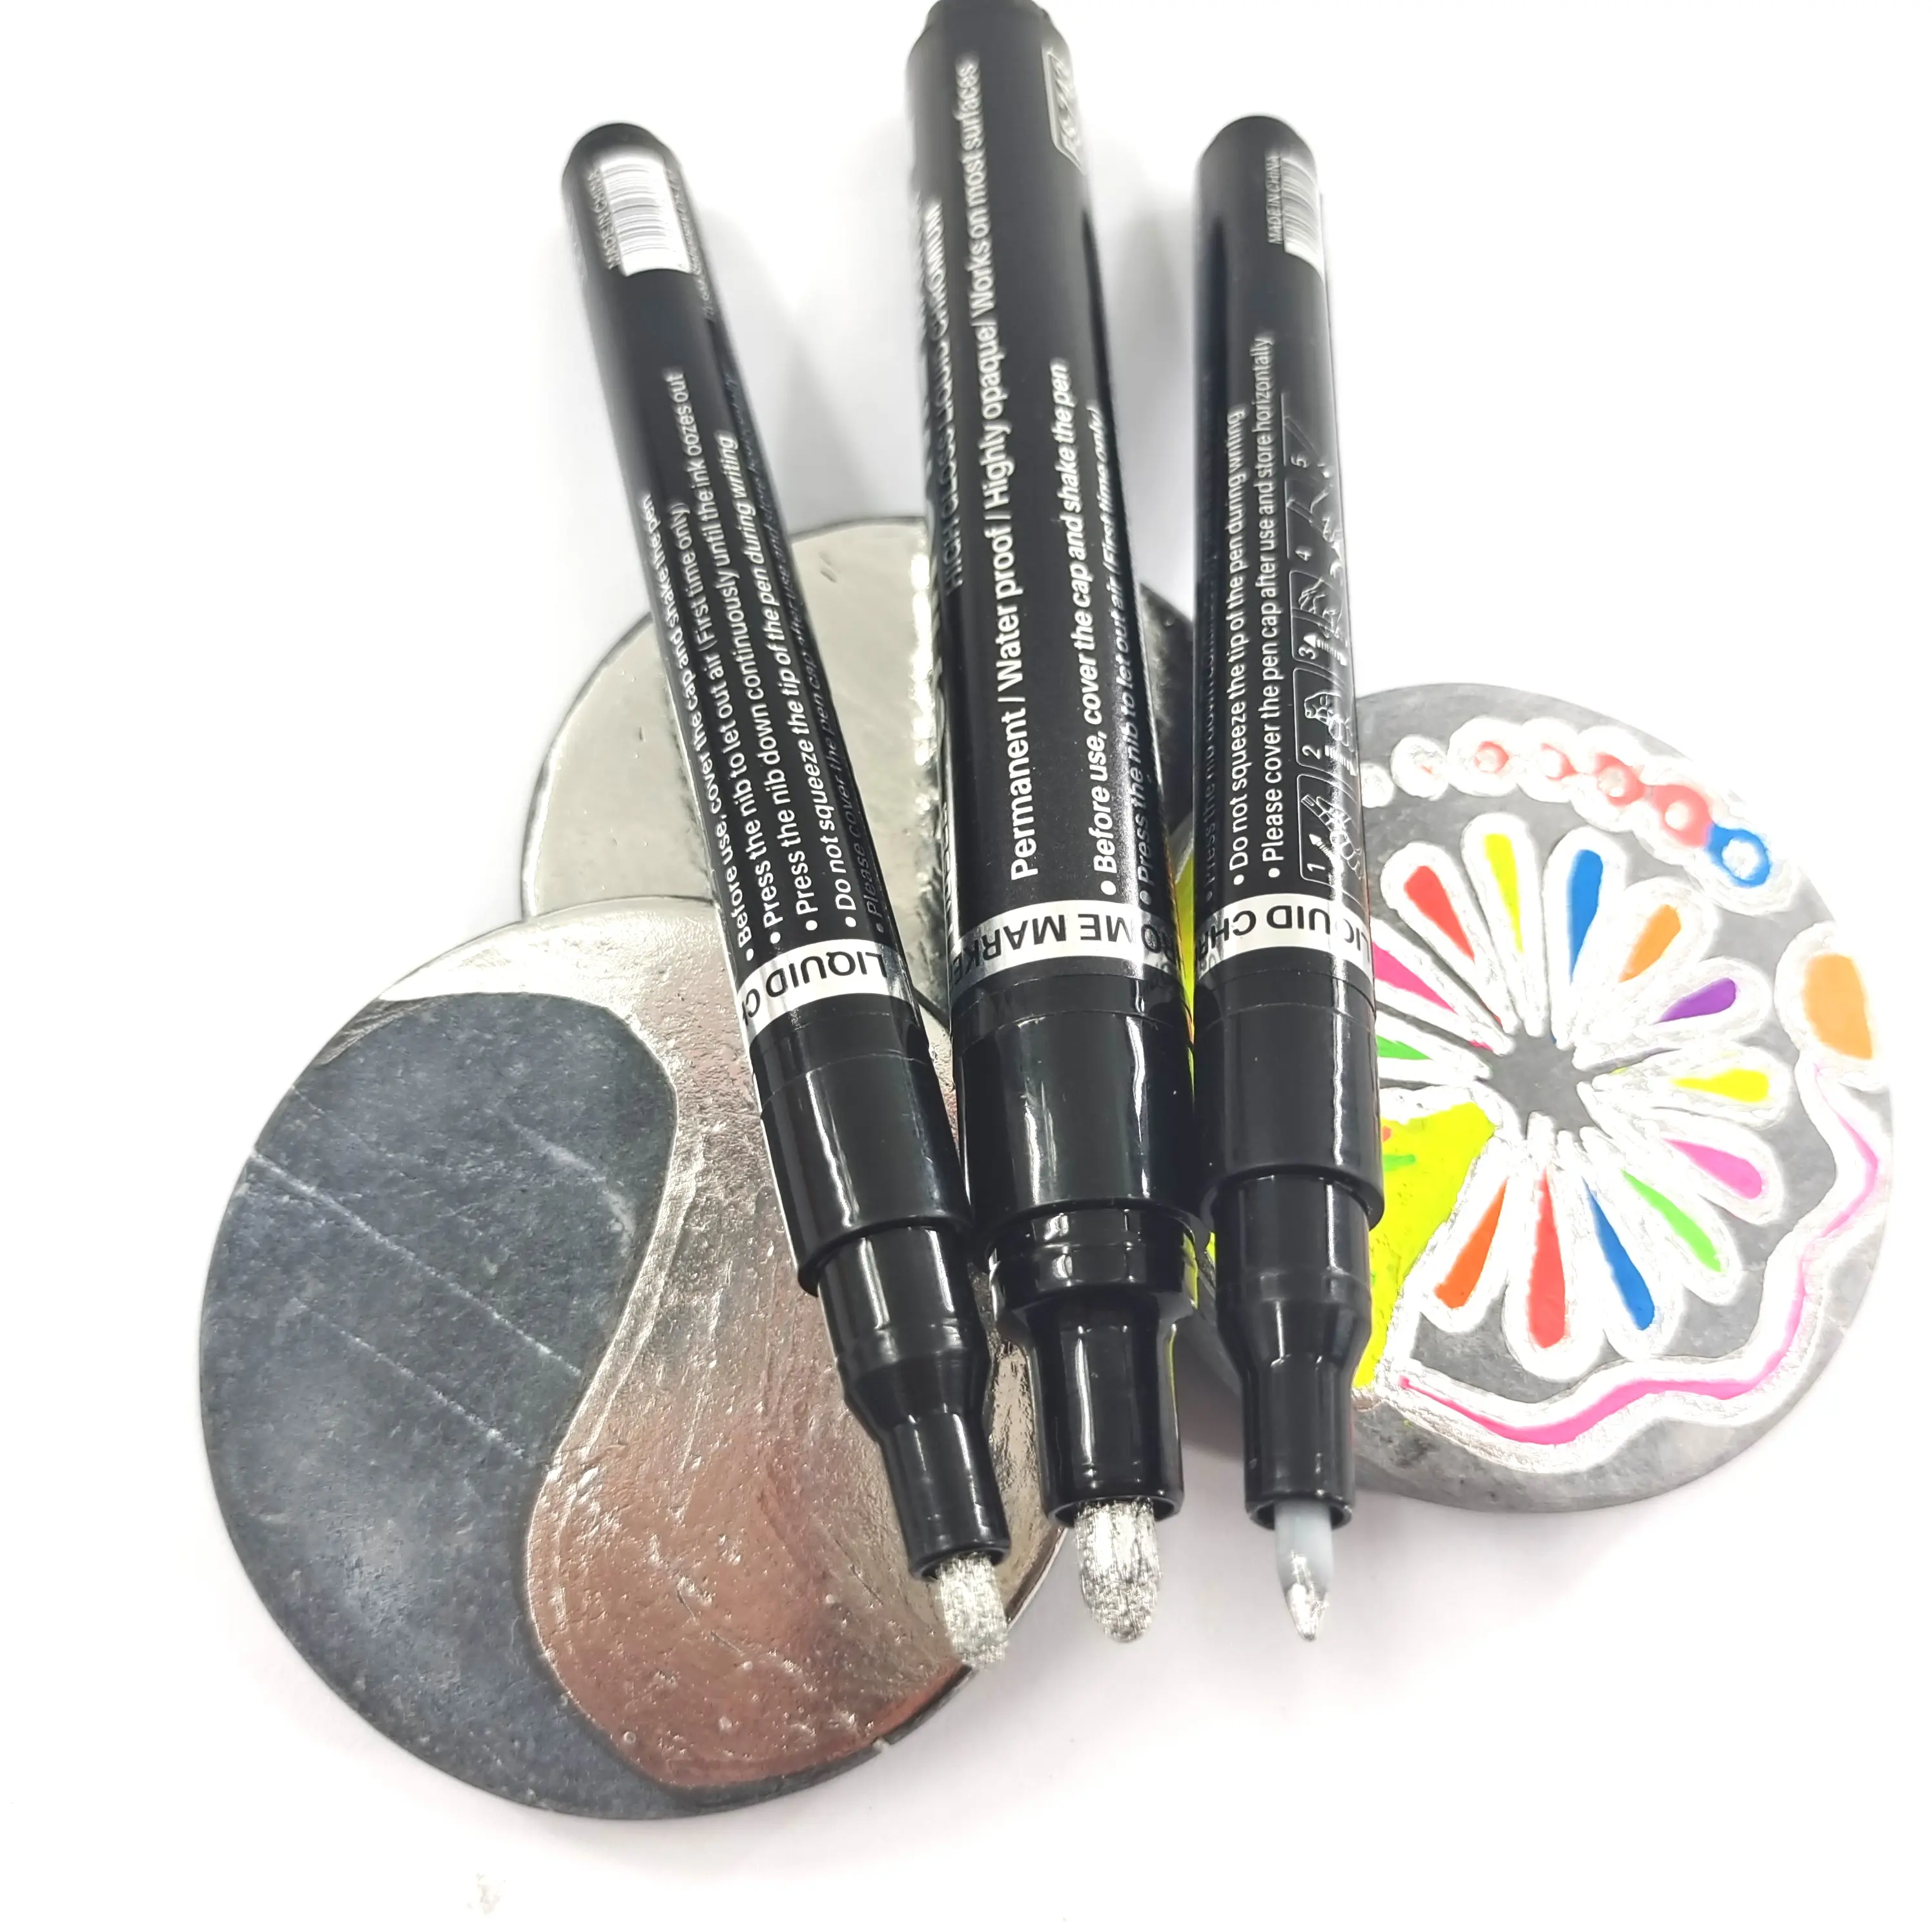 Chrome Paint Marker Pens Waterproof Permanent Paint Art Marker Pen Set For Rock Painting